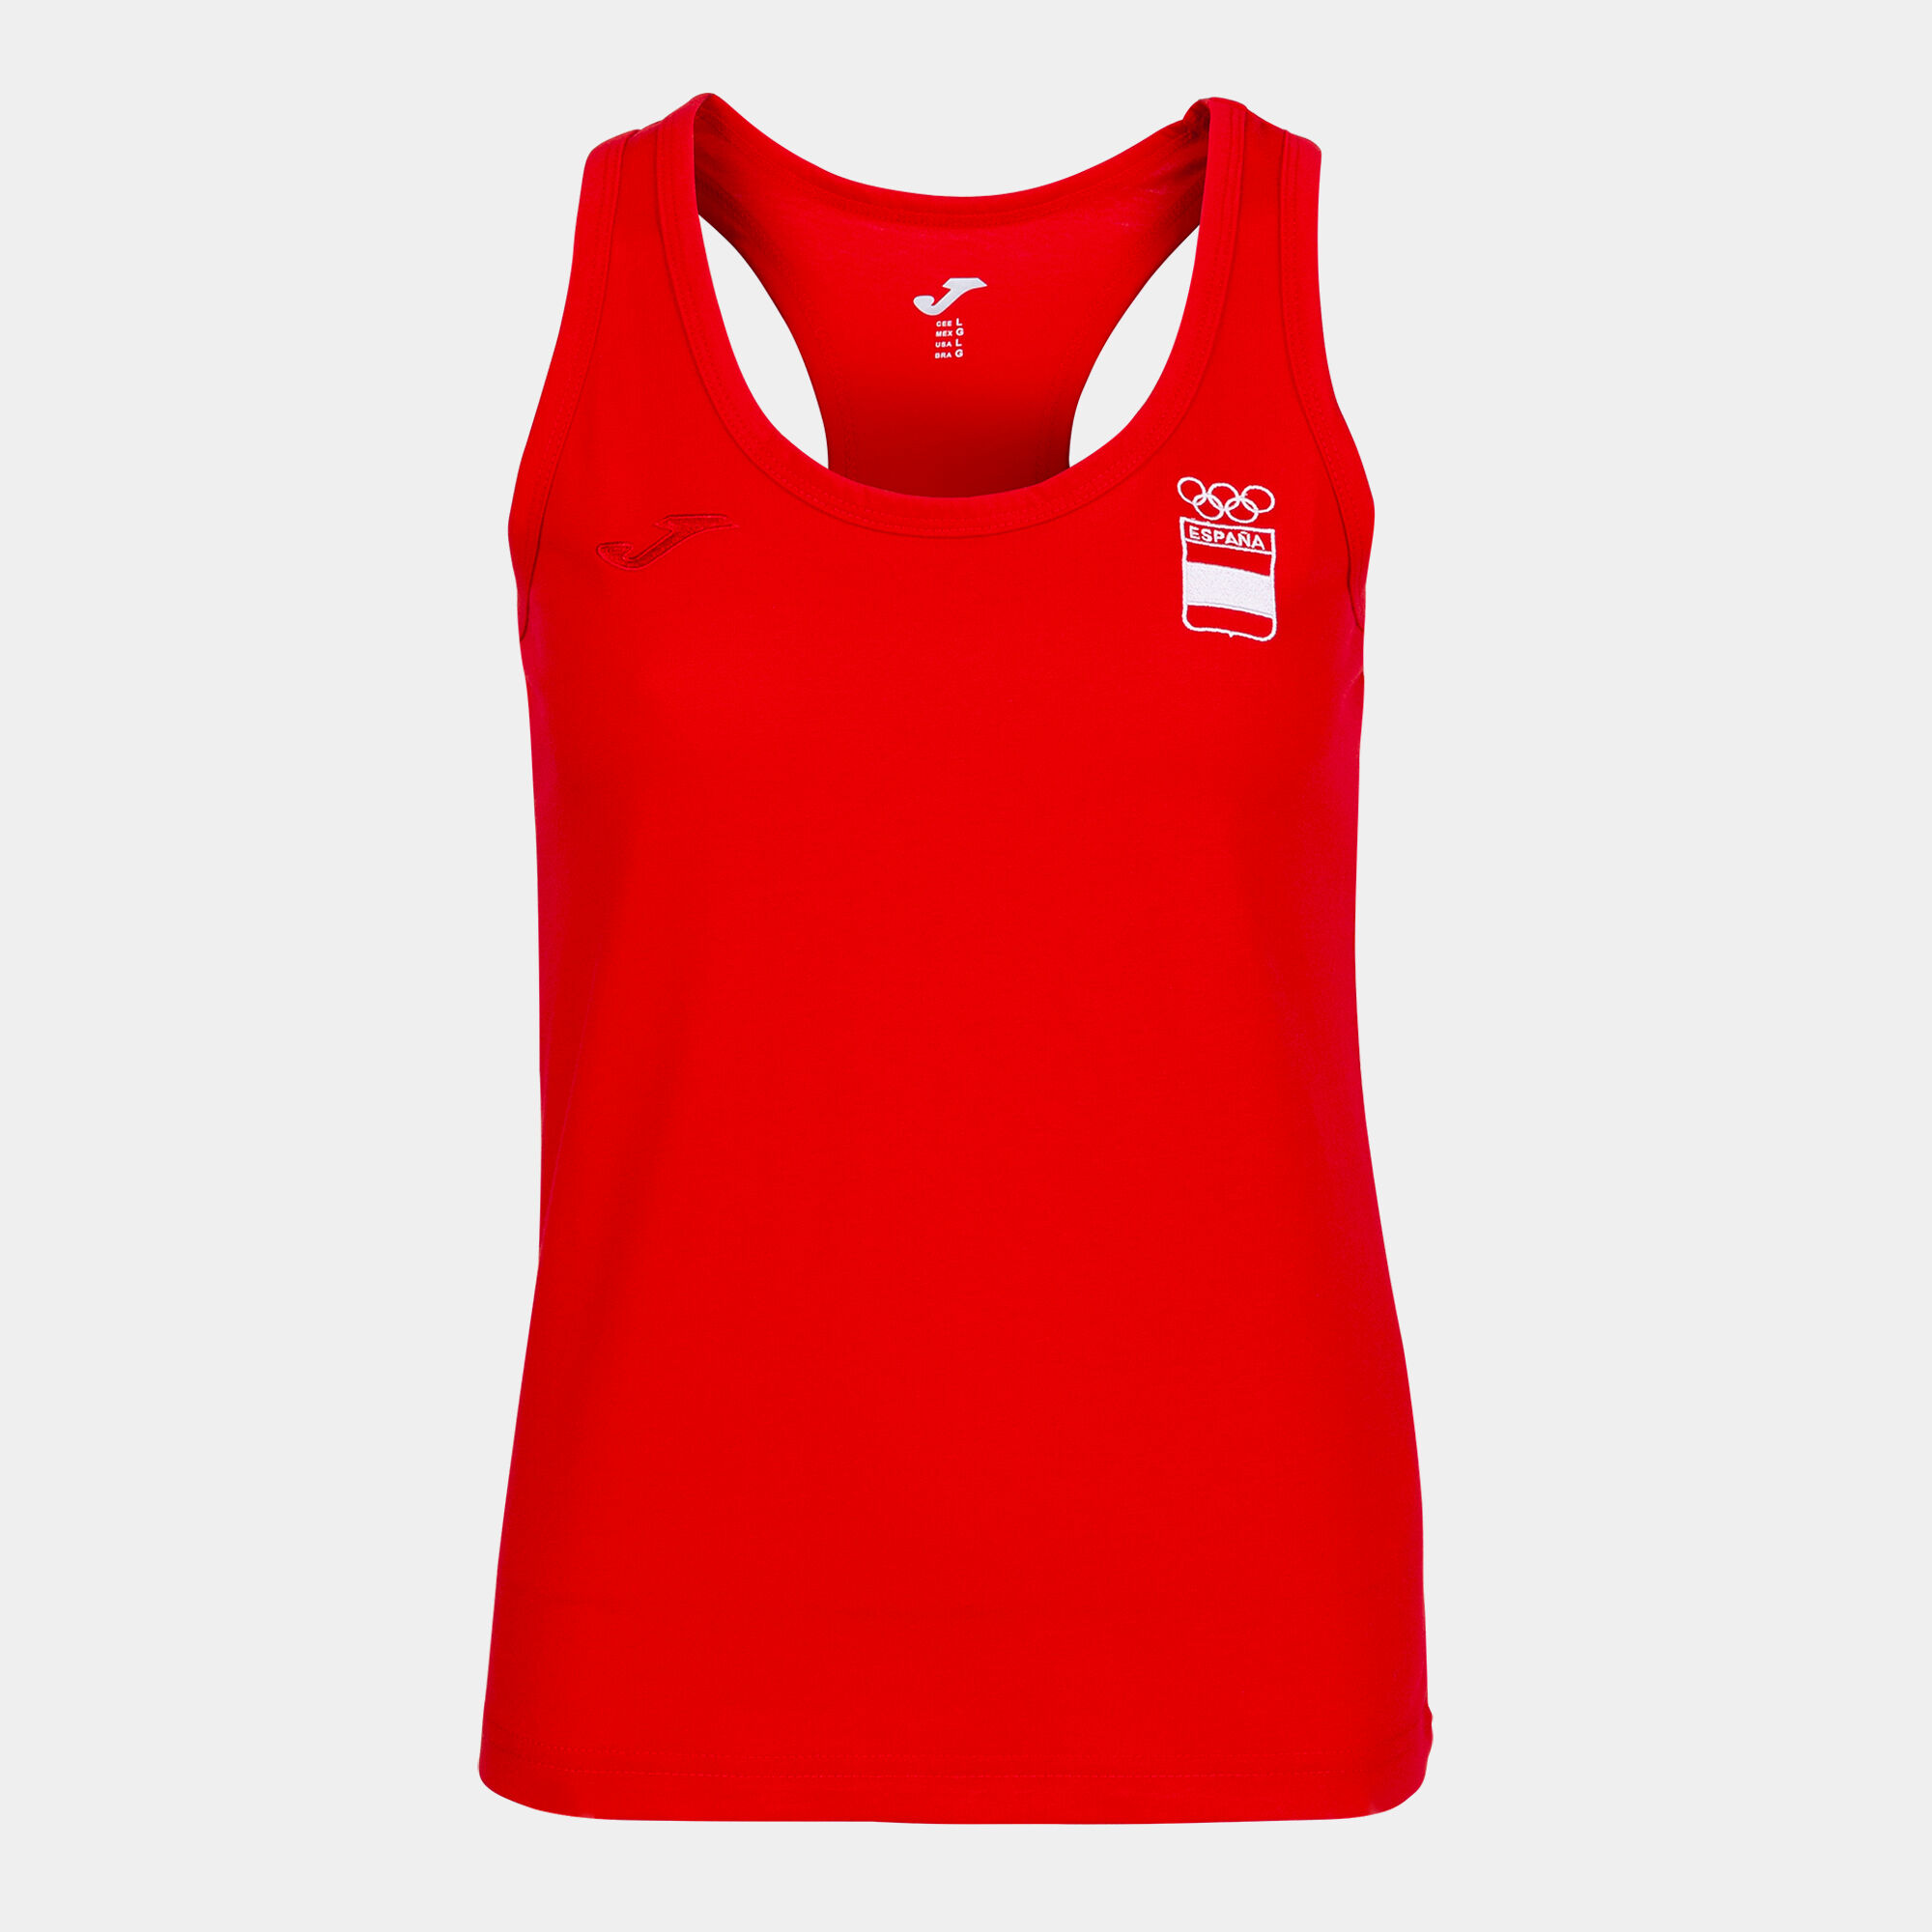 Camiseta sin mangas paseo Comité Olímpico Español mujer